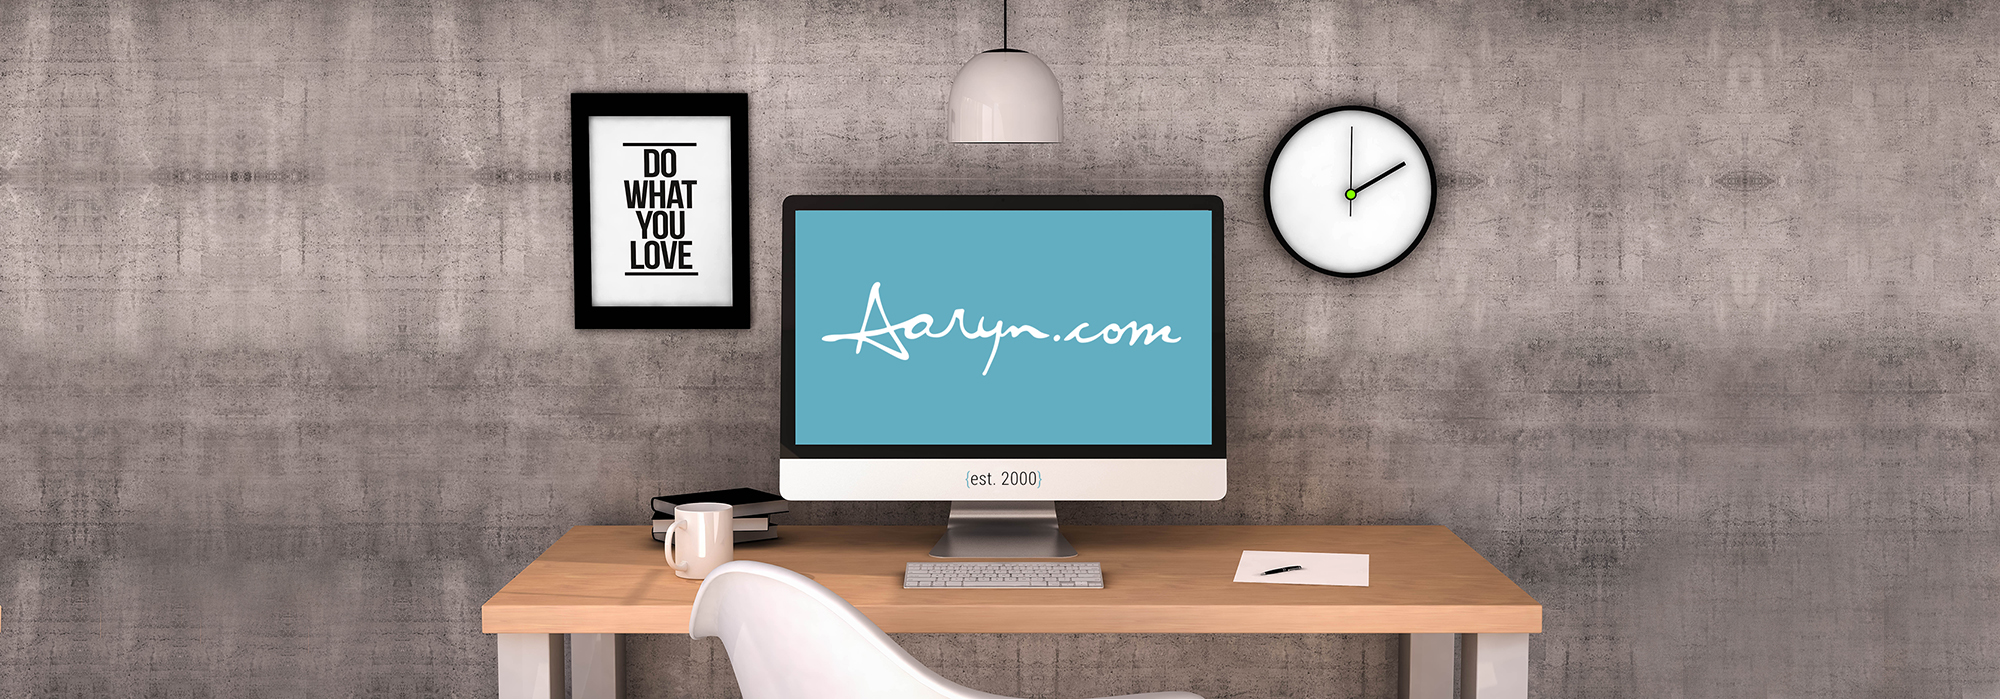 Aaryn.com Website Development and Graphic Design